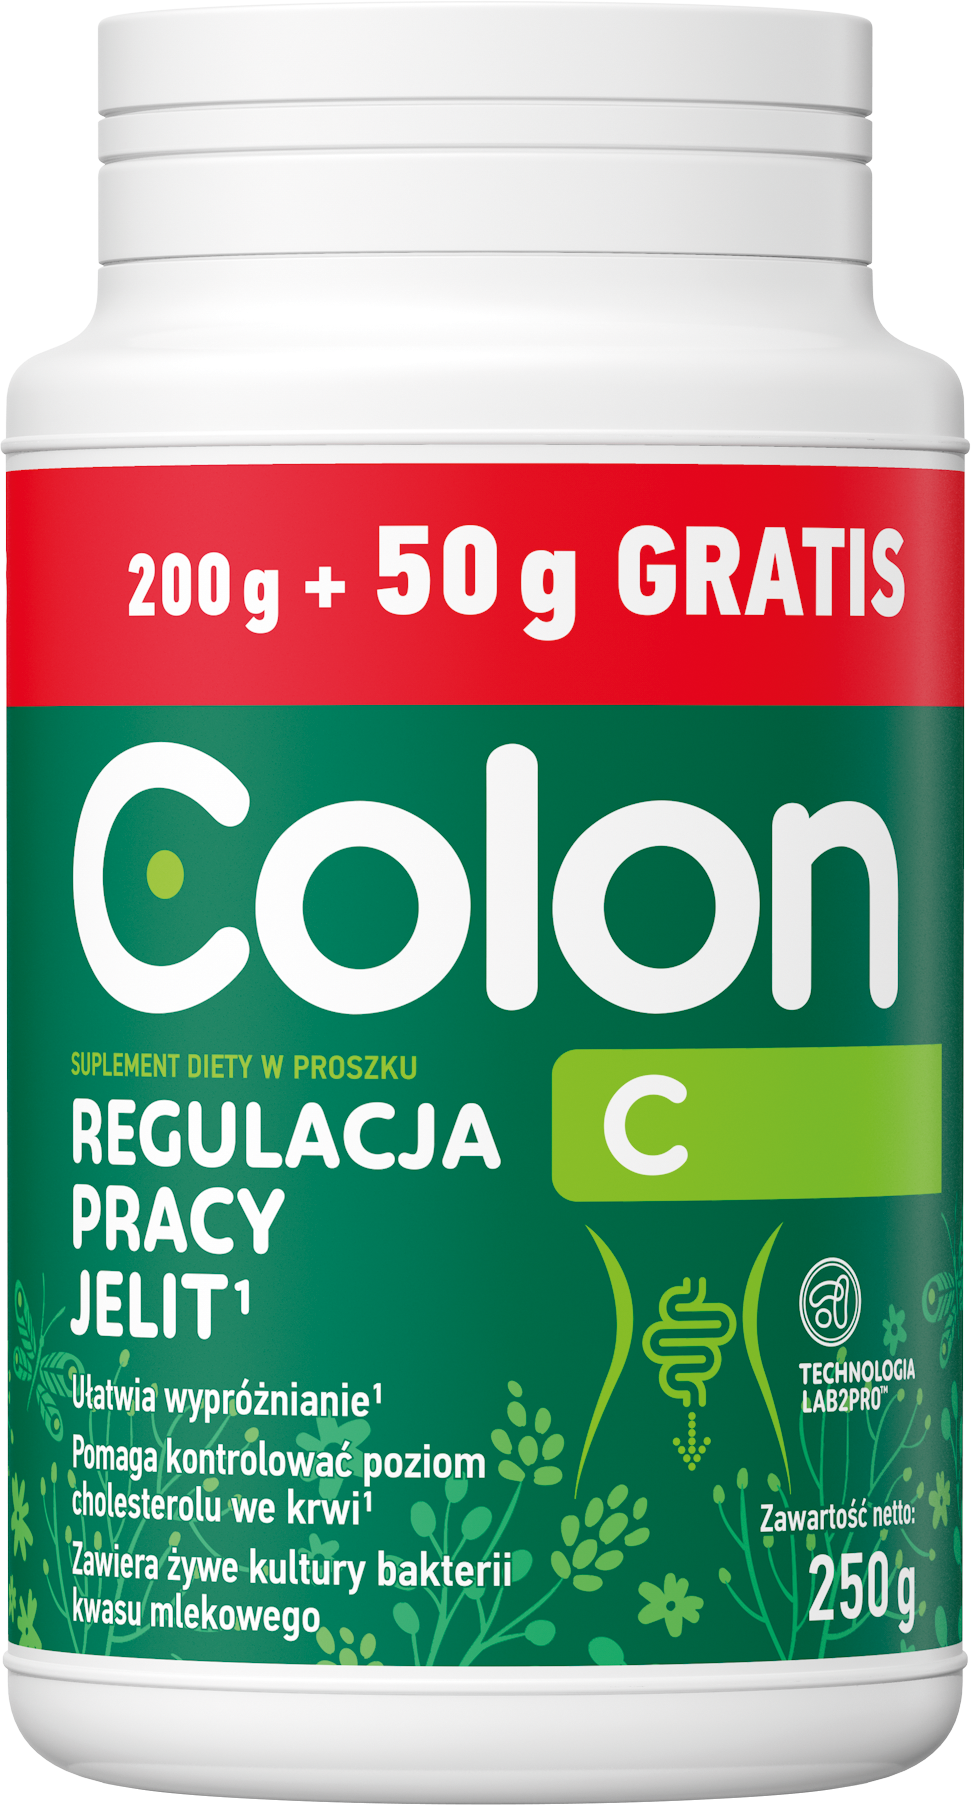 Colon C regulacja pracy jelit 250 g